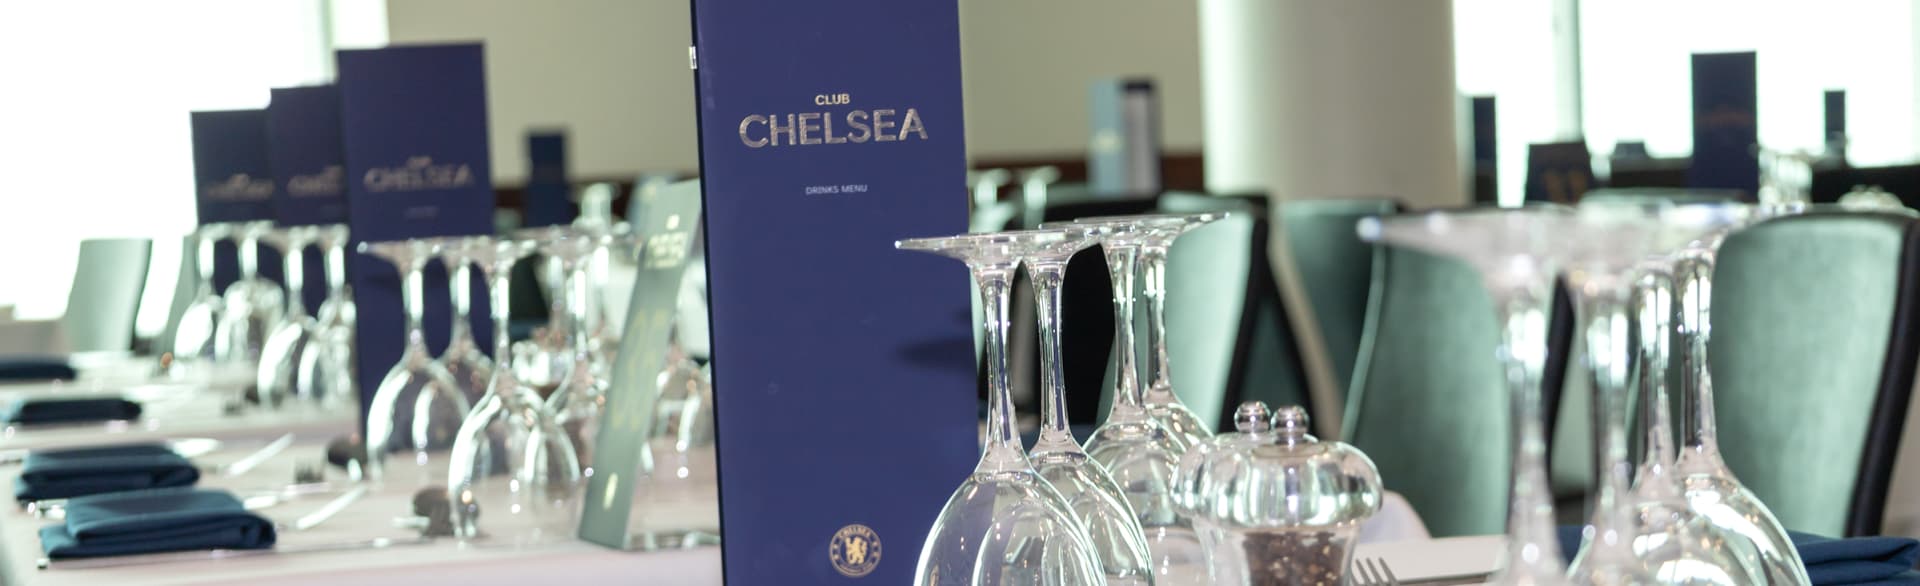 Chelsea Tickets & Hospitality